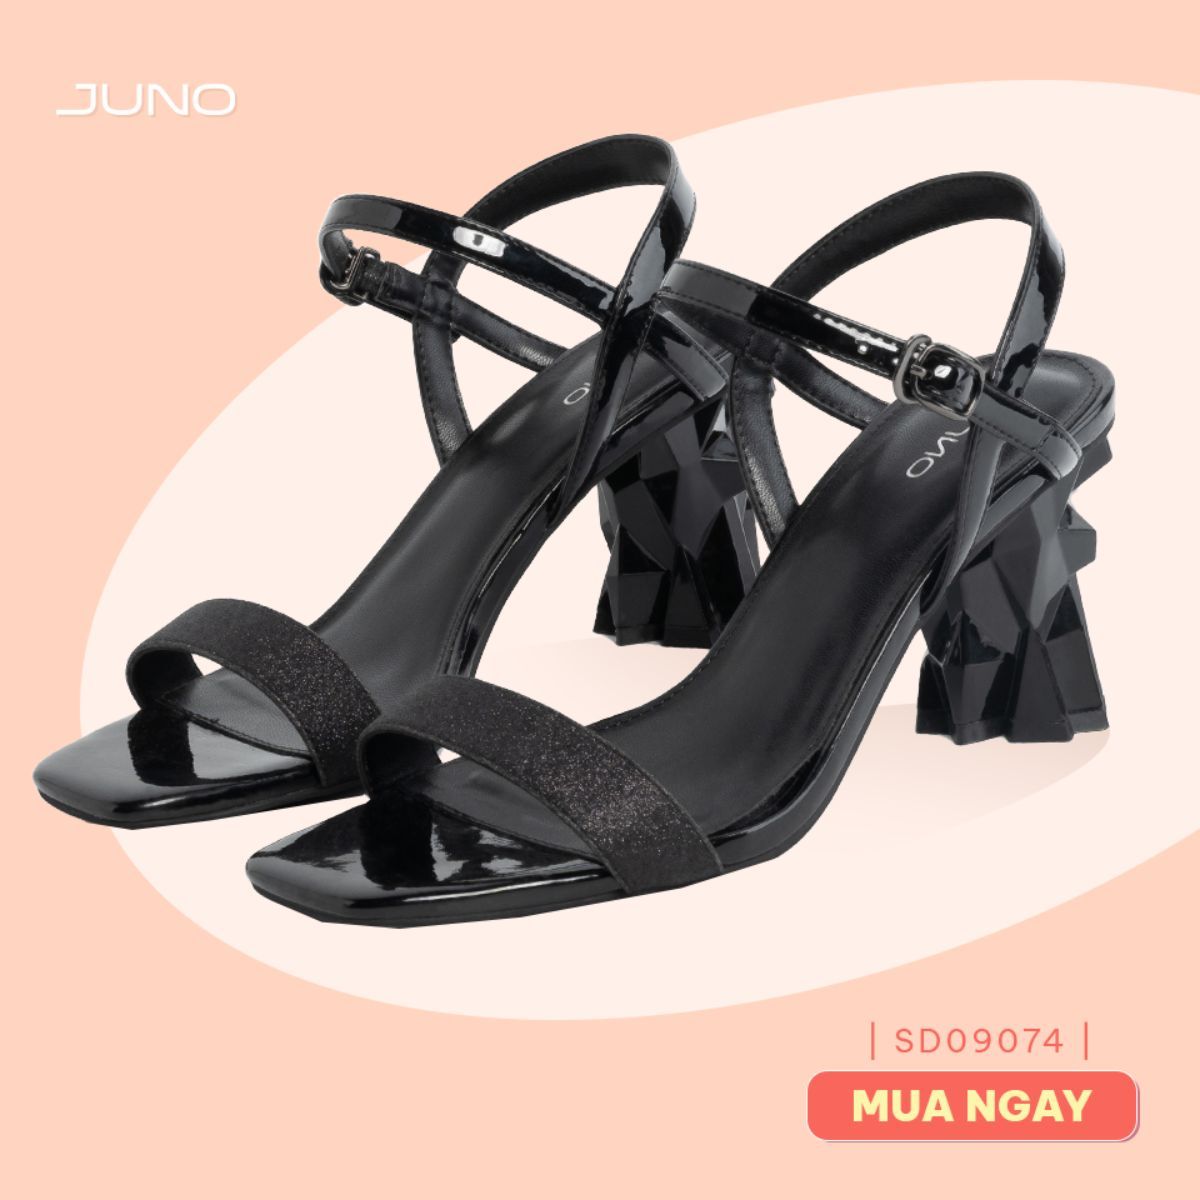 Juno - shop giày lê duẩn Đà Nẵng